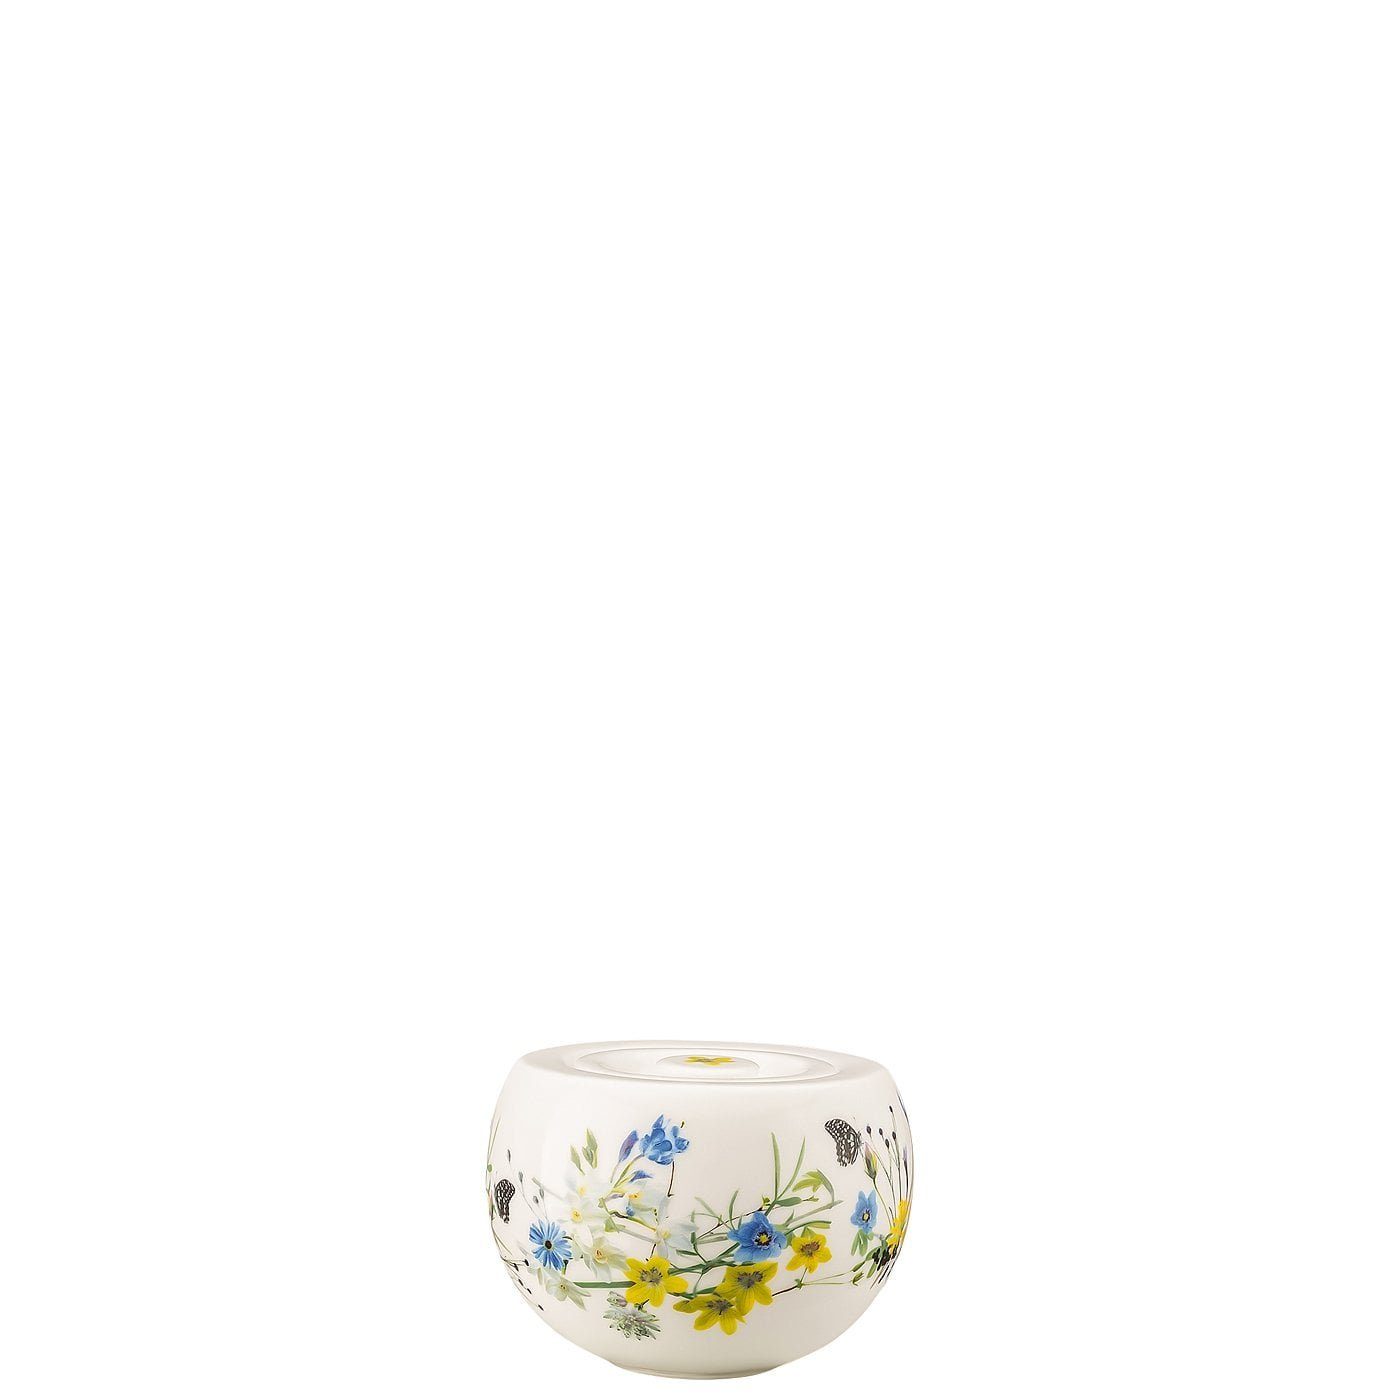 Rosenthal Zuckerdose Brillance Fleurs Alpes 6 Zuckerdose (2-tlg) des Porzellan, Pers